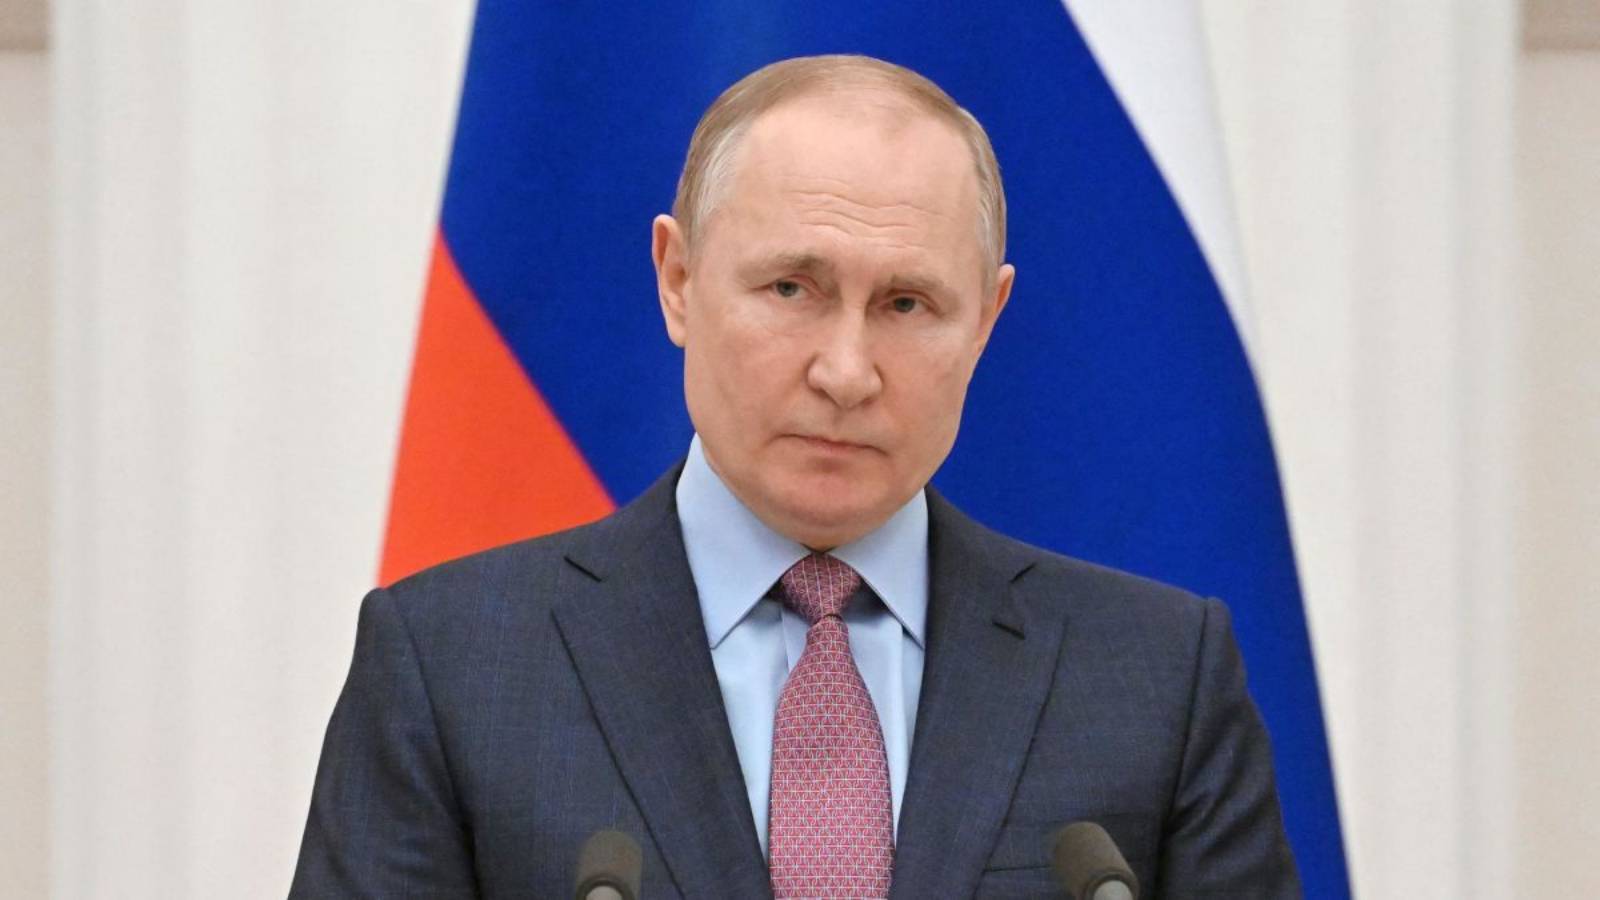 Vladimir Poetin verandert de bevelhebber van de oorlog in Oekraïne